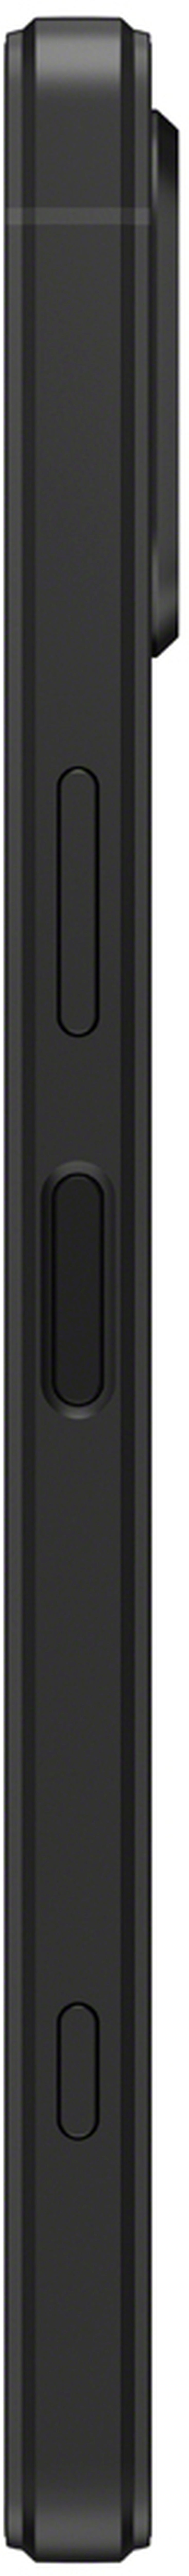 Sony Xperia 5 V 5G black 128 GB Dual SIM - Foto Erhardt